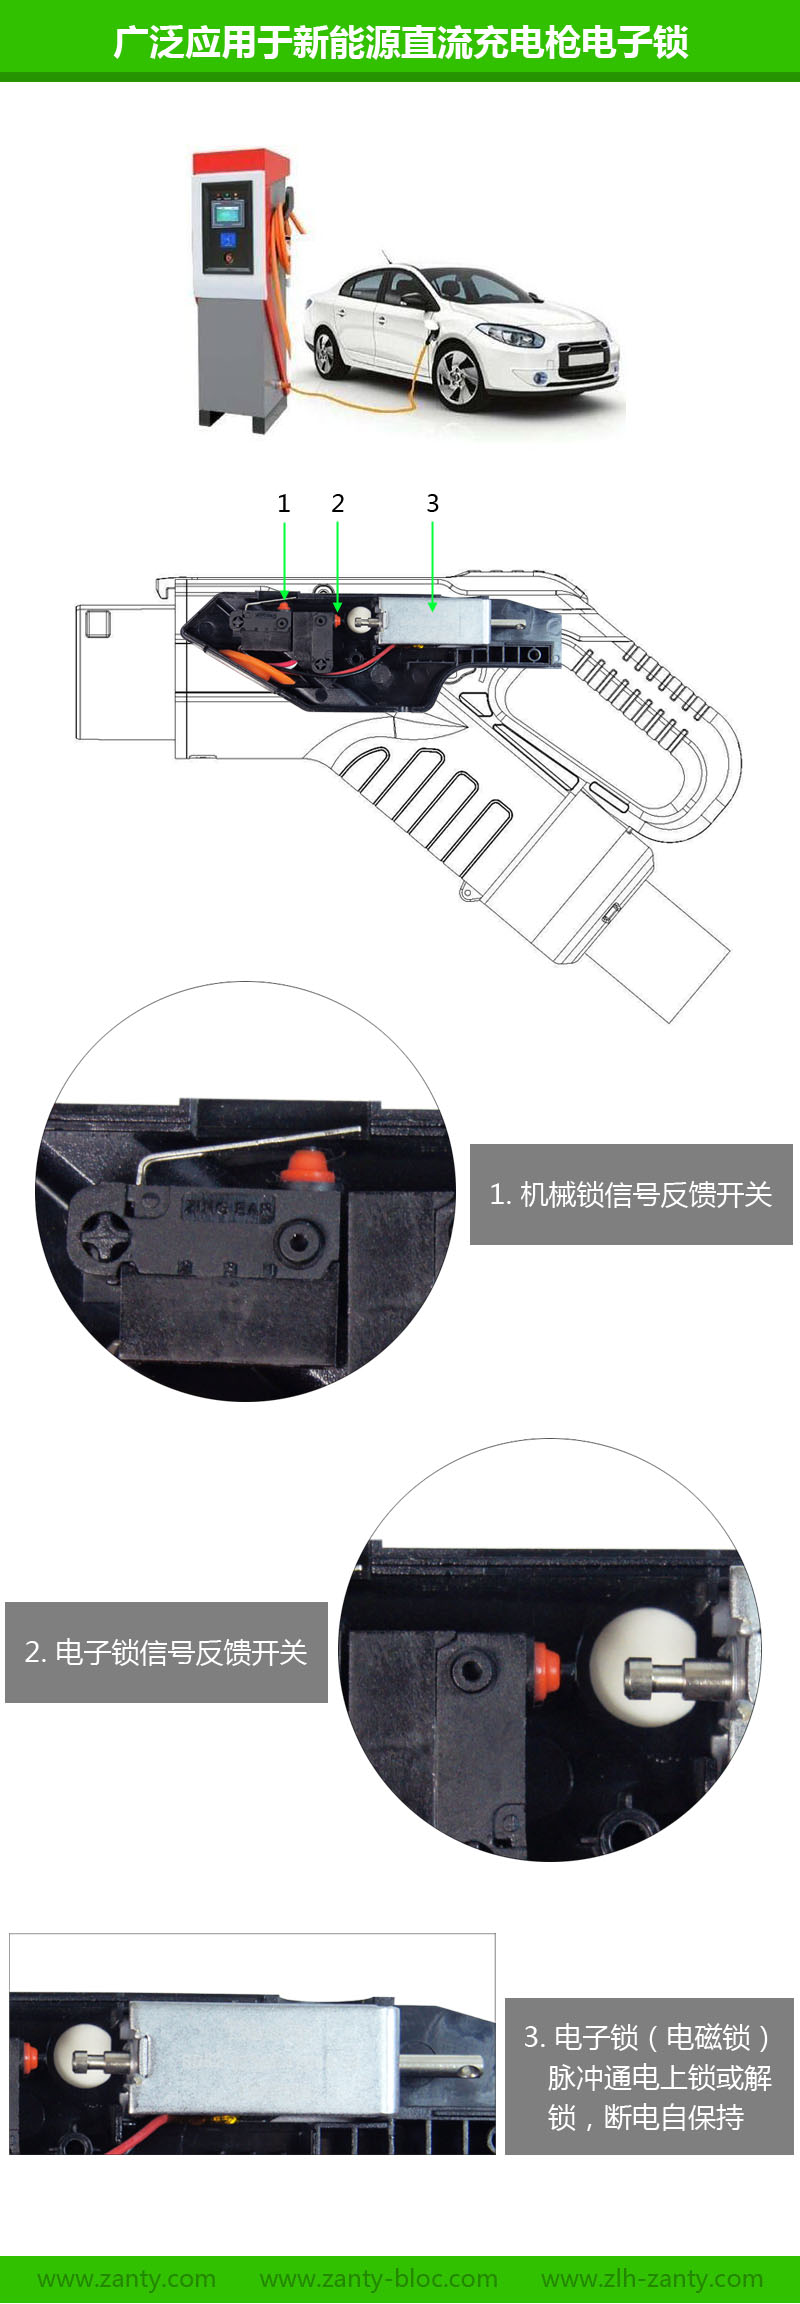 SDK2-0735S双保持电磁铁 小型直流充电枪双向自保持电磁锁电子锁